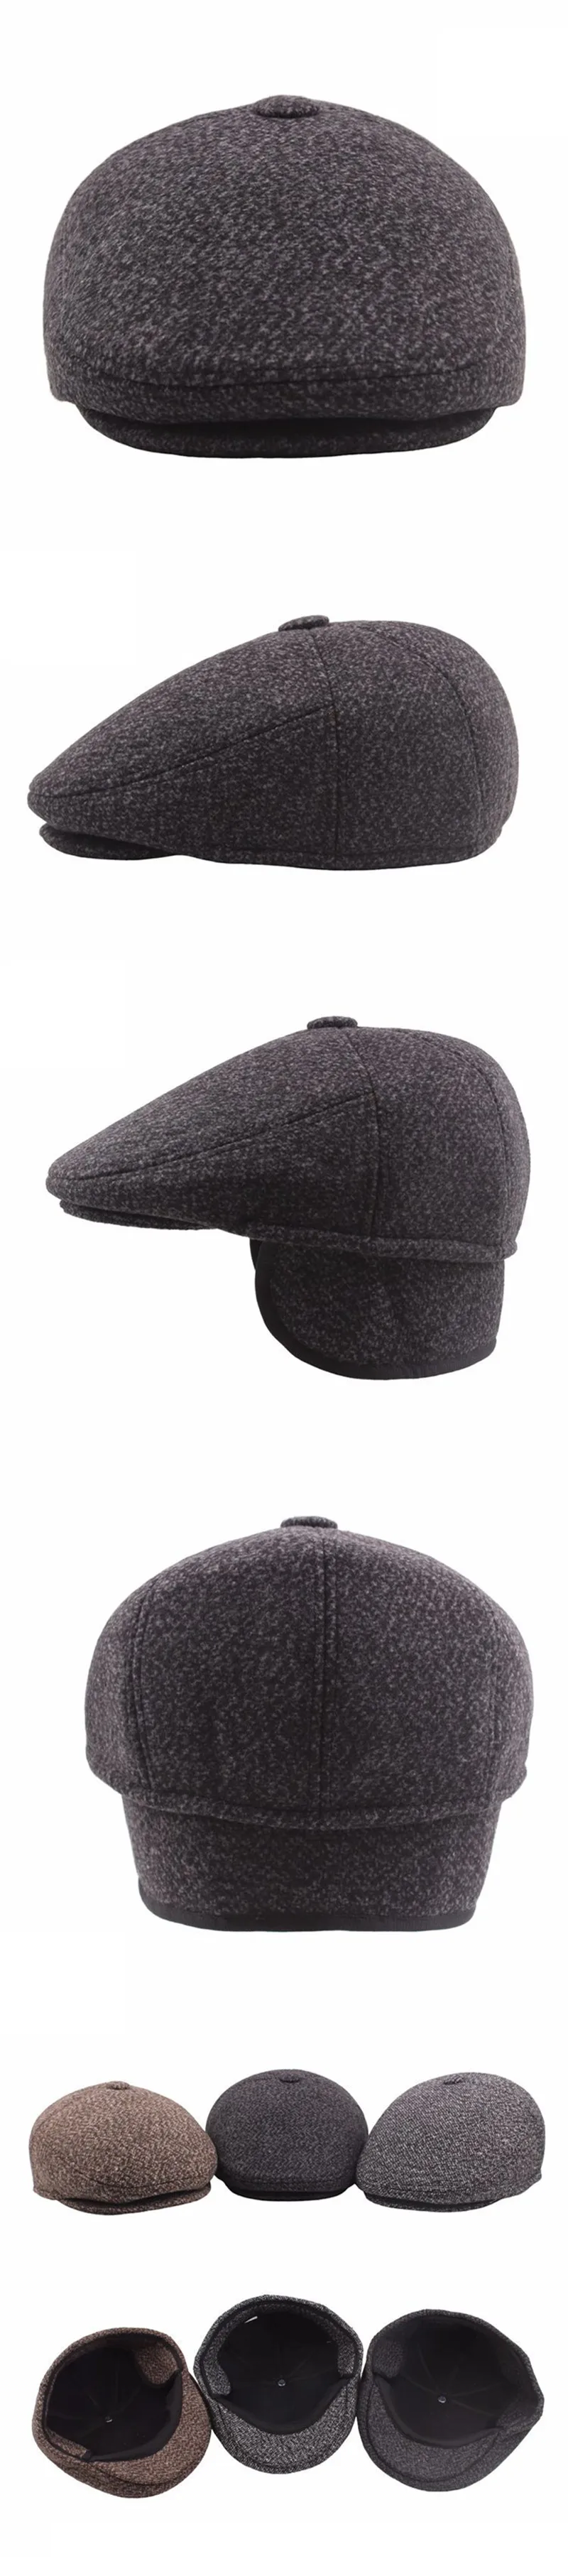 SHALUOTAOTAO Осень Зима утолщаются термальные береты для мужчин Мода защита ушей теплый язык шапка среднего возраста пожилых зимняя шапка